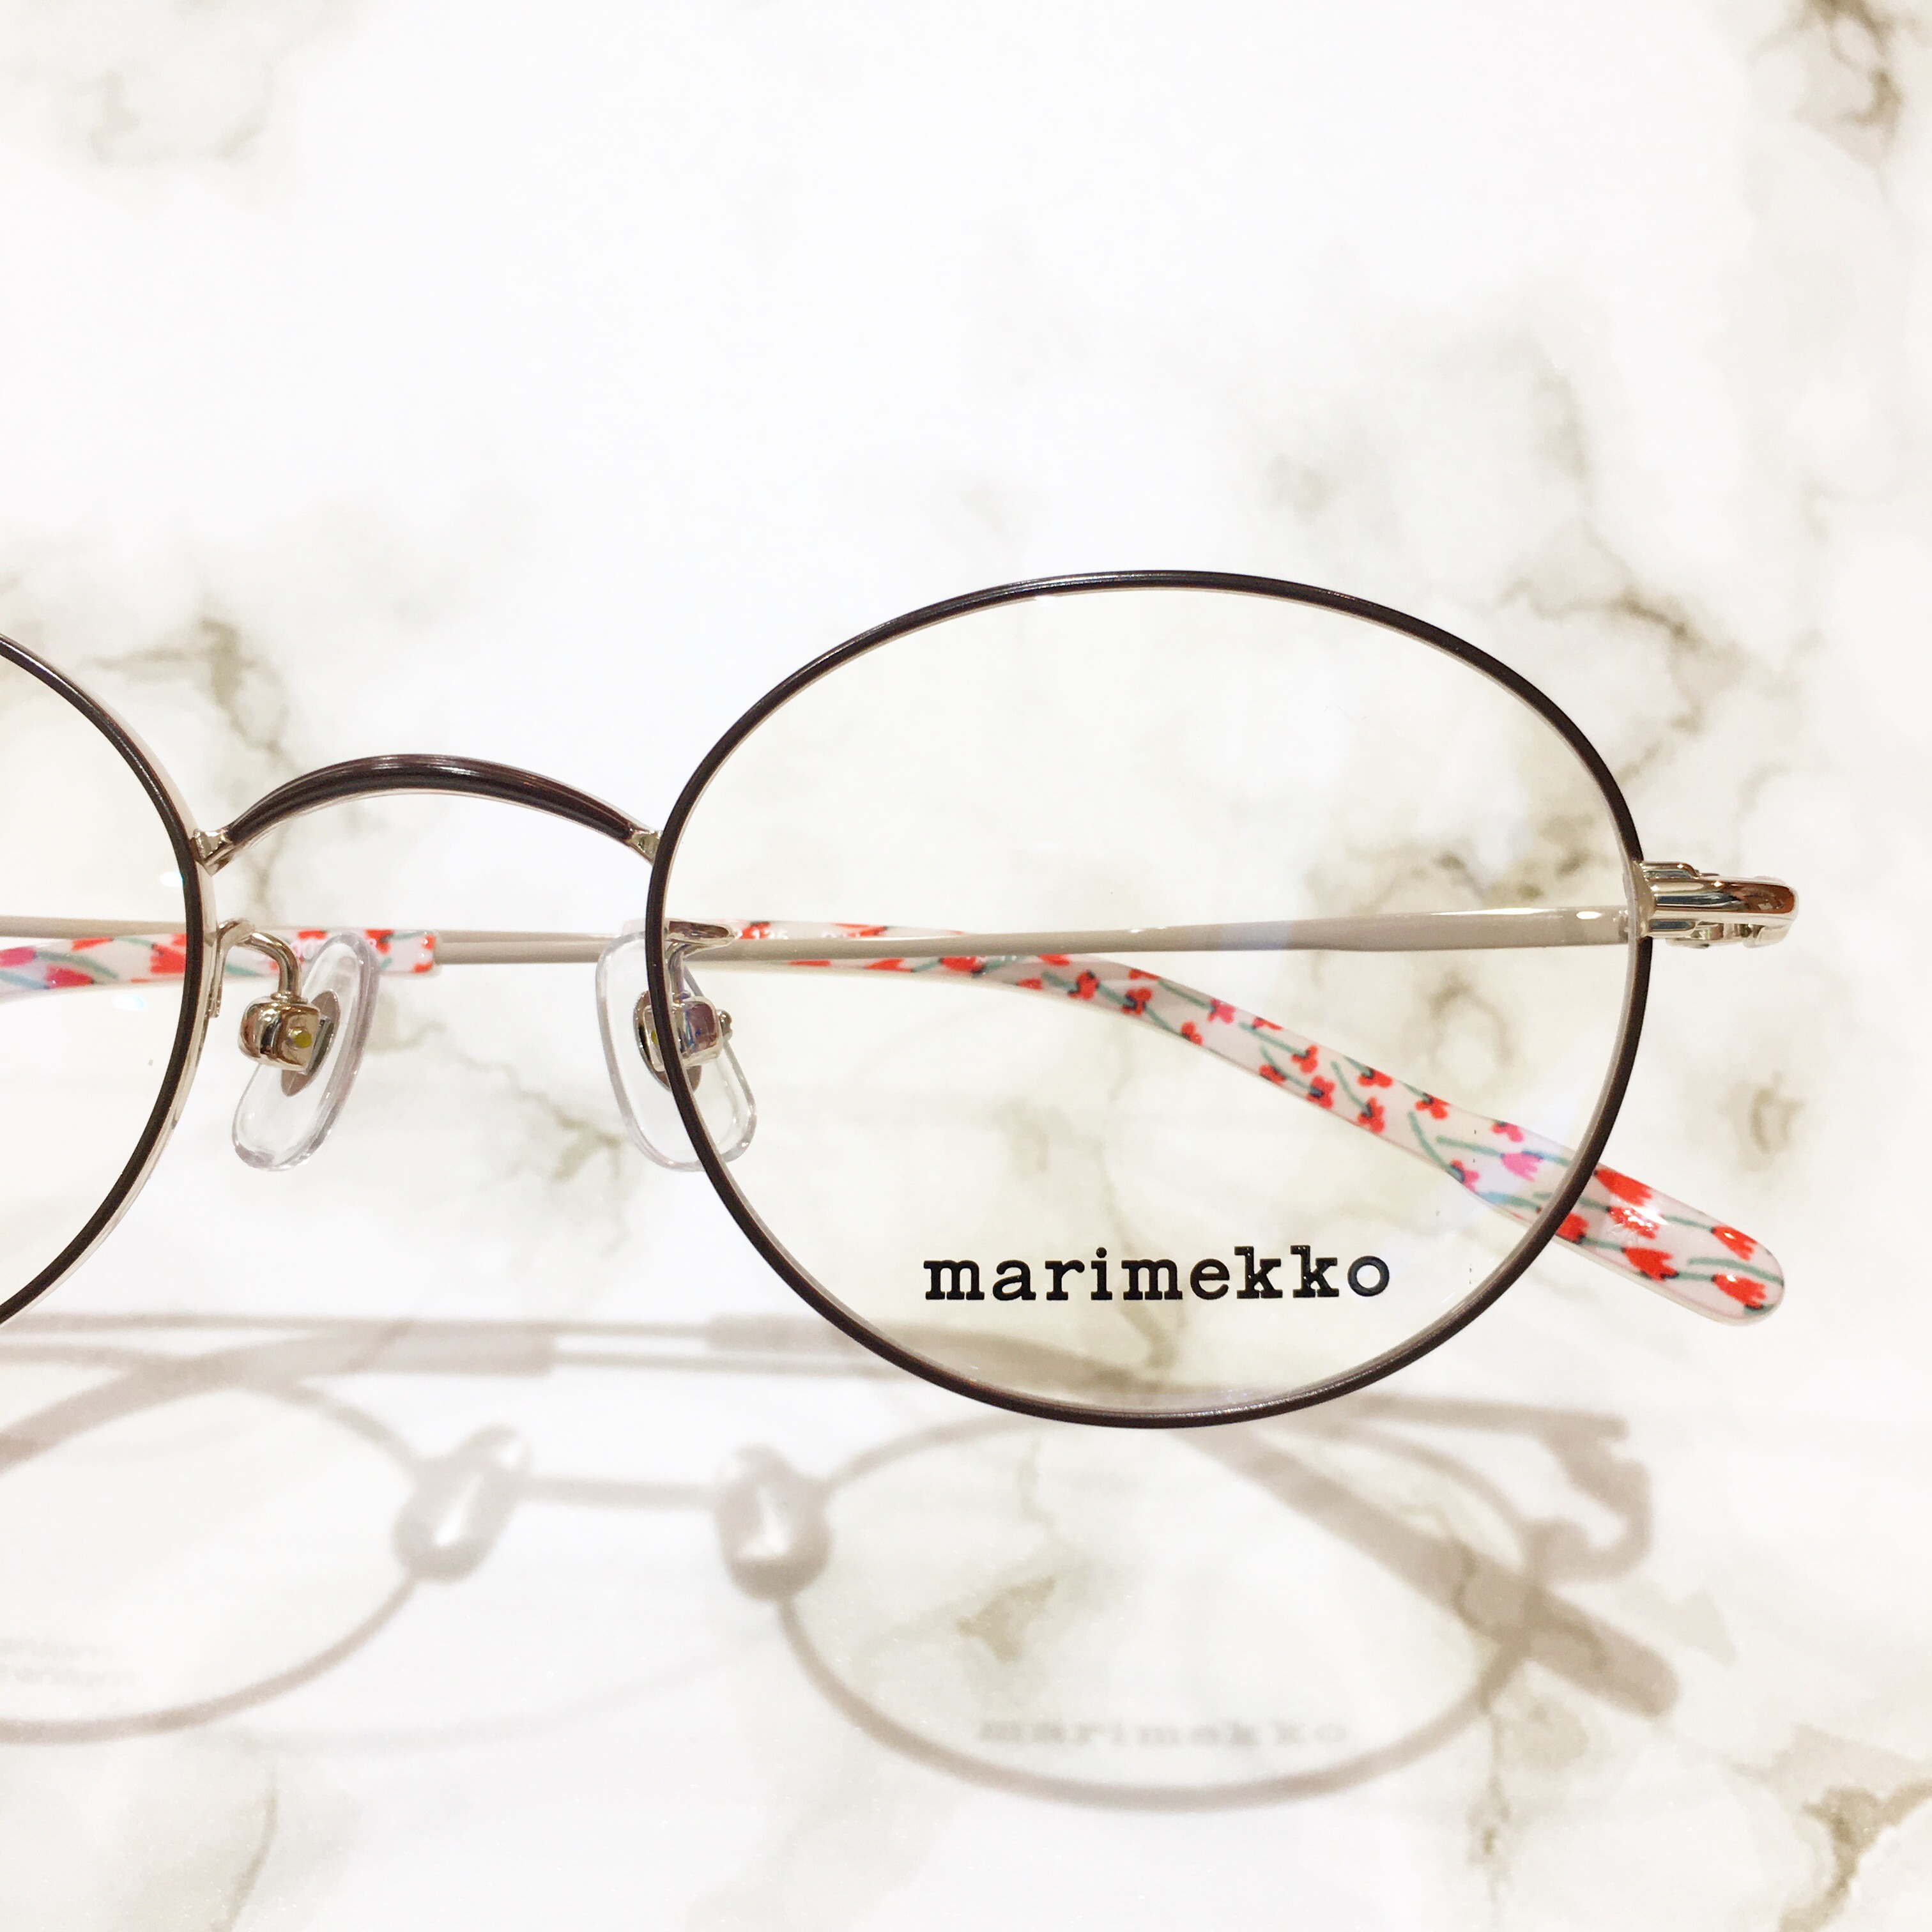 【marimekko】マリメッコのポップな柄のメガネ♪